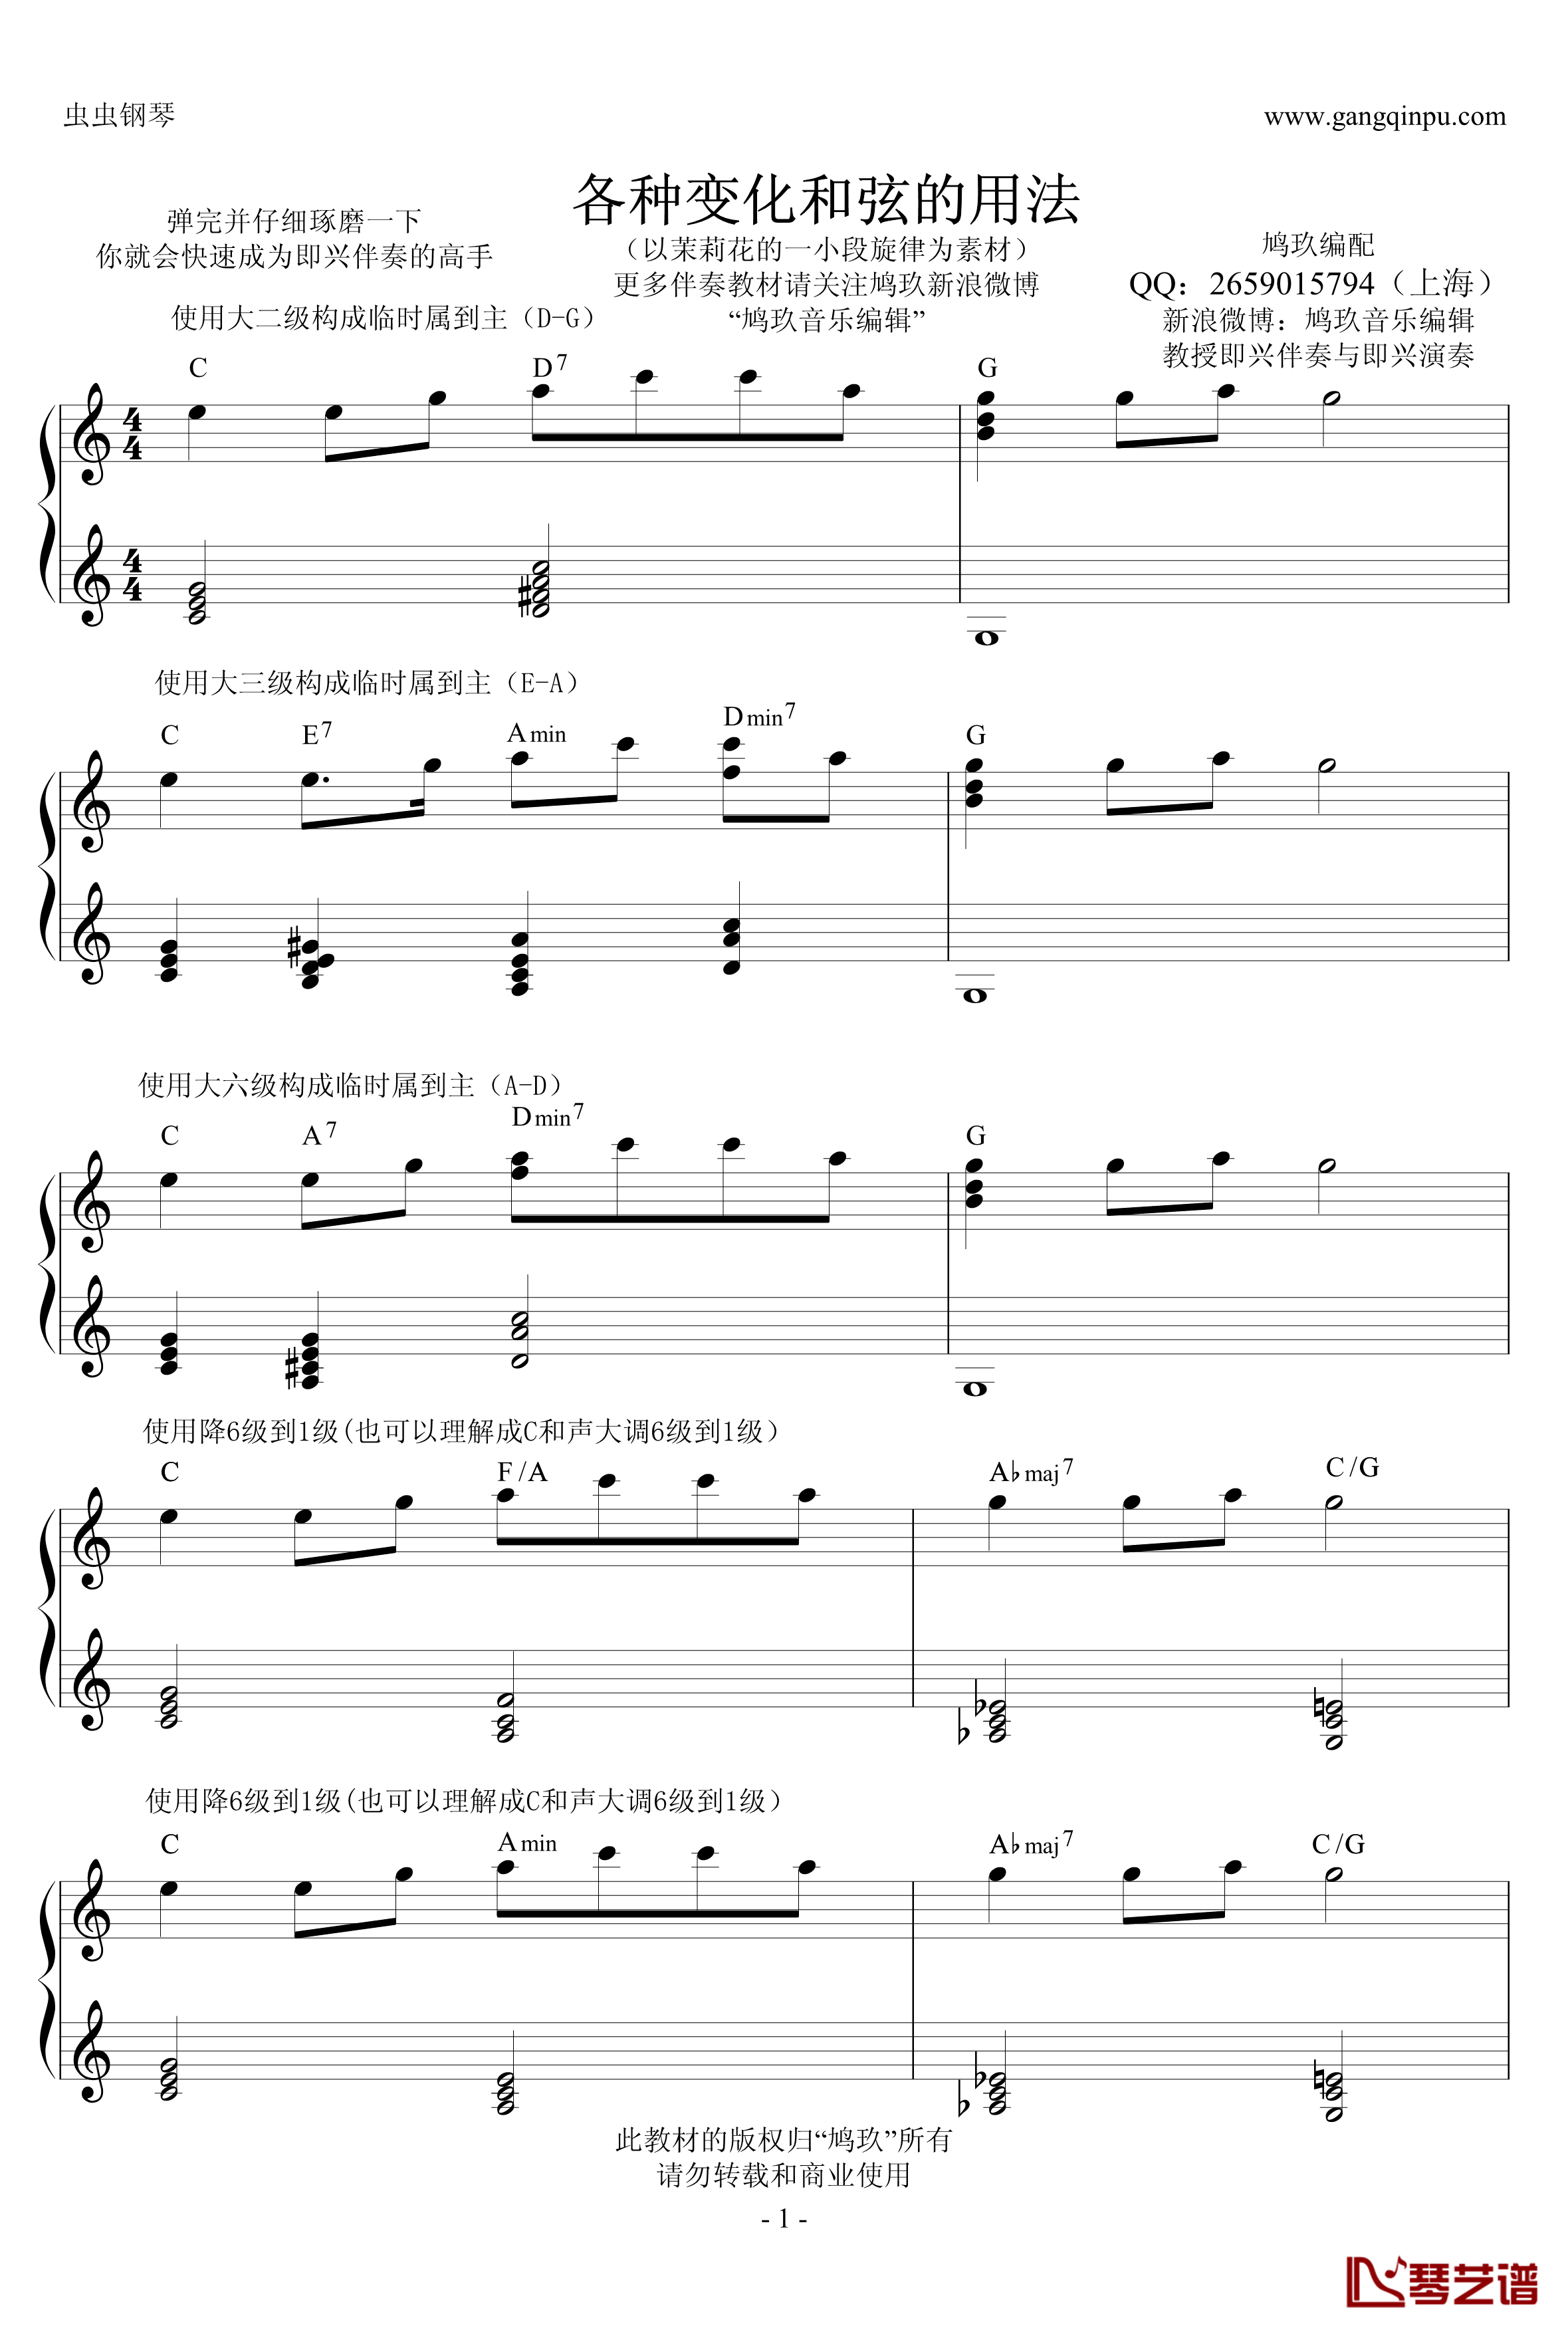 超实用即兴伴奏教材2钢琴谱-变化和弦-鸠玖1